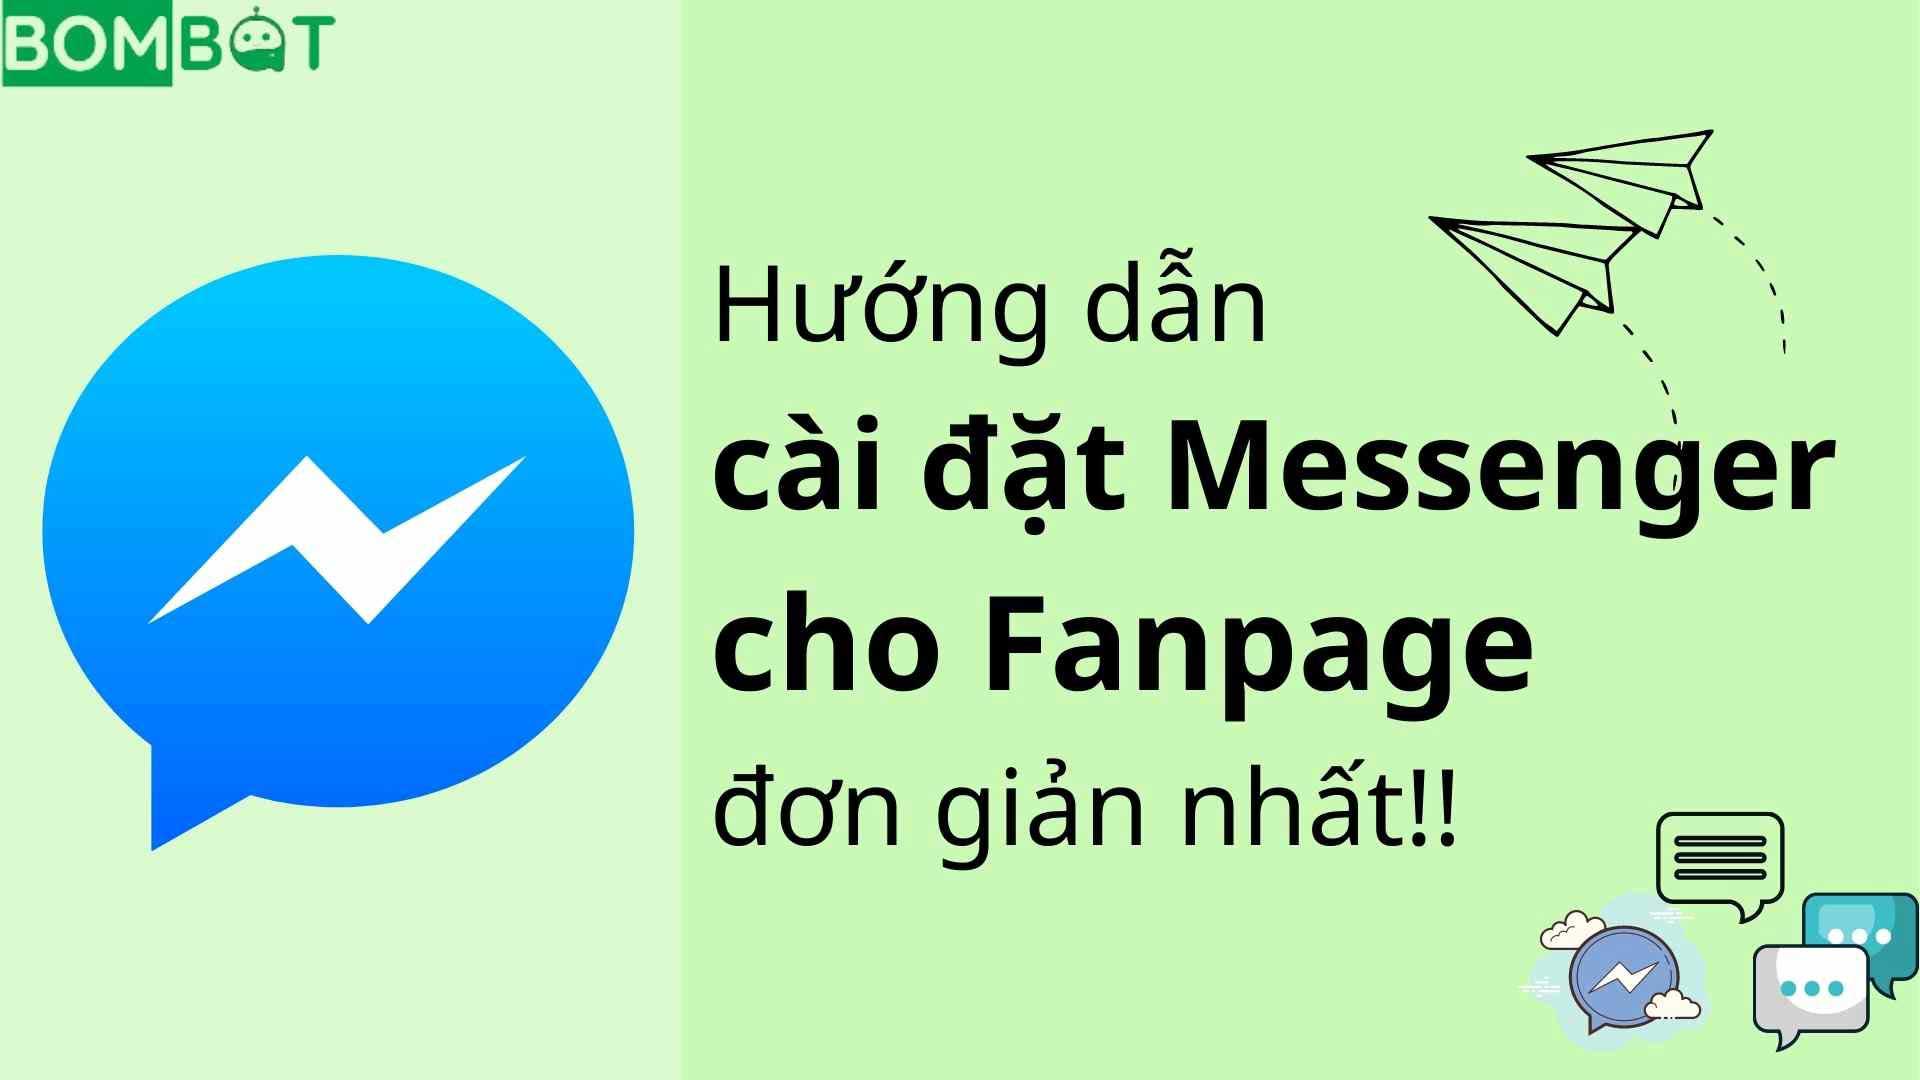 Hướng Dẫn Cài đặt Messenger Cho Fanpage đơn Giản Nhất - Bombot.vn - Ứng Dụng Gửi Tin Hàng Loạt Trên Facebook Messenger